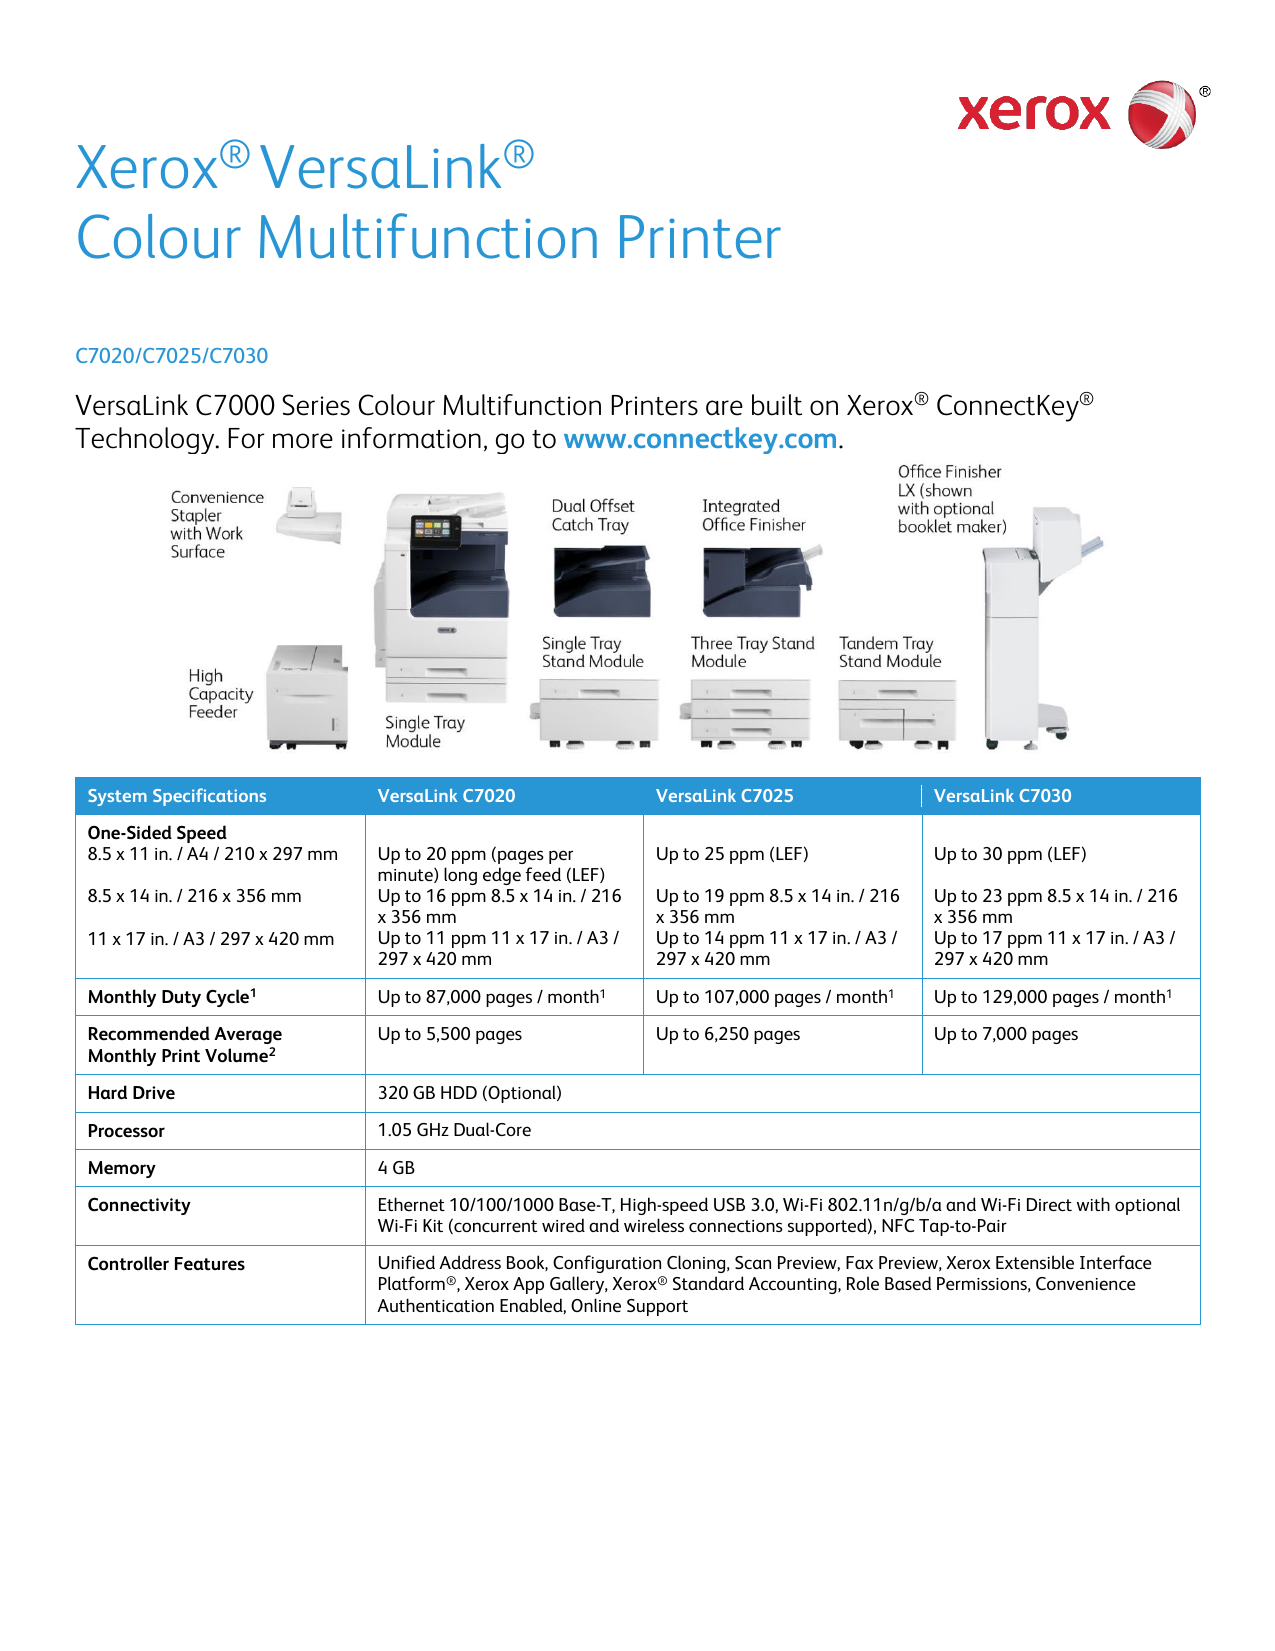 Xerox Versalink C7020 C7025 C7030 Color Multifunction Printer